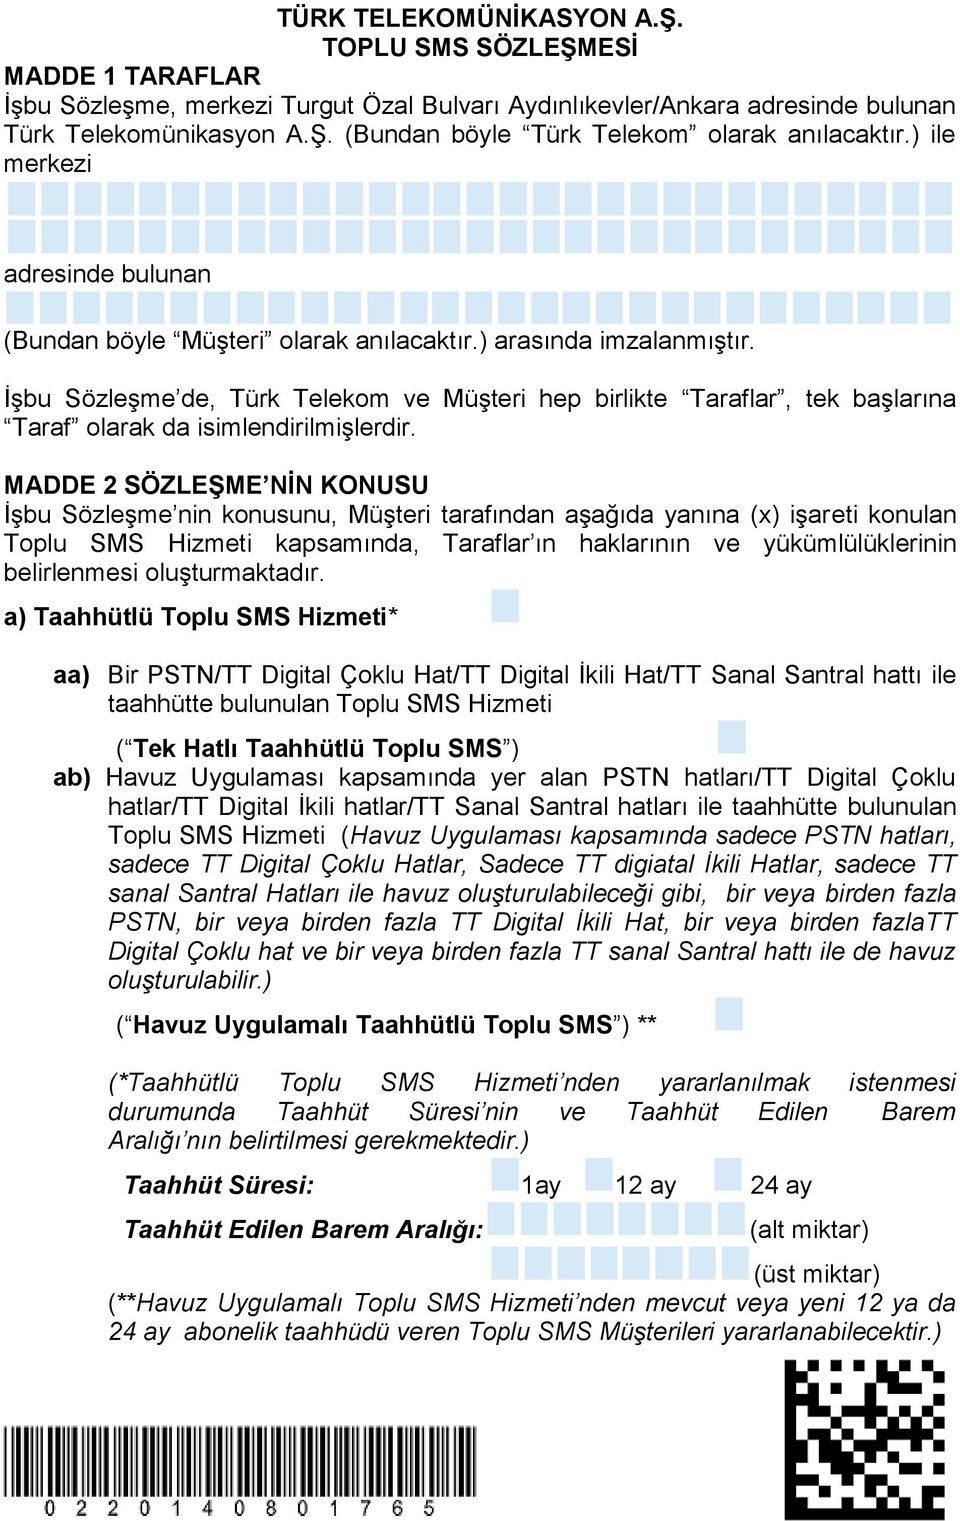 İşbu Sözleşme de, Türk Telekom ve Müşteri hep birlikte Taraflar, tek başlarına Taraf olarak da isimlendirilmişlerdir.